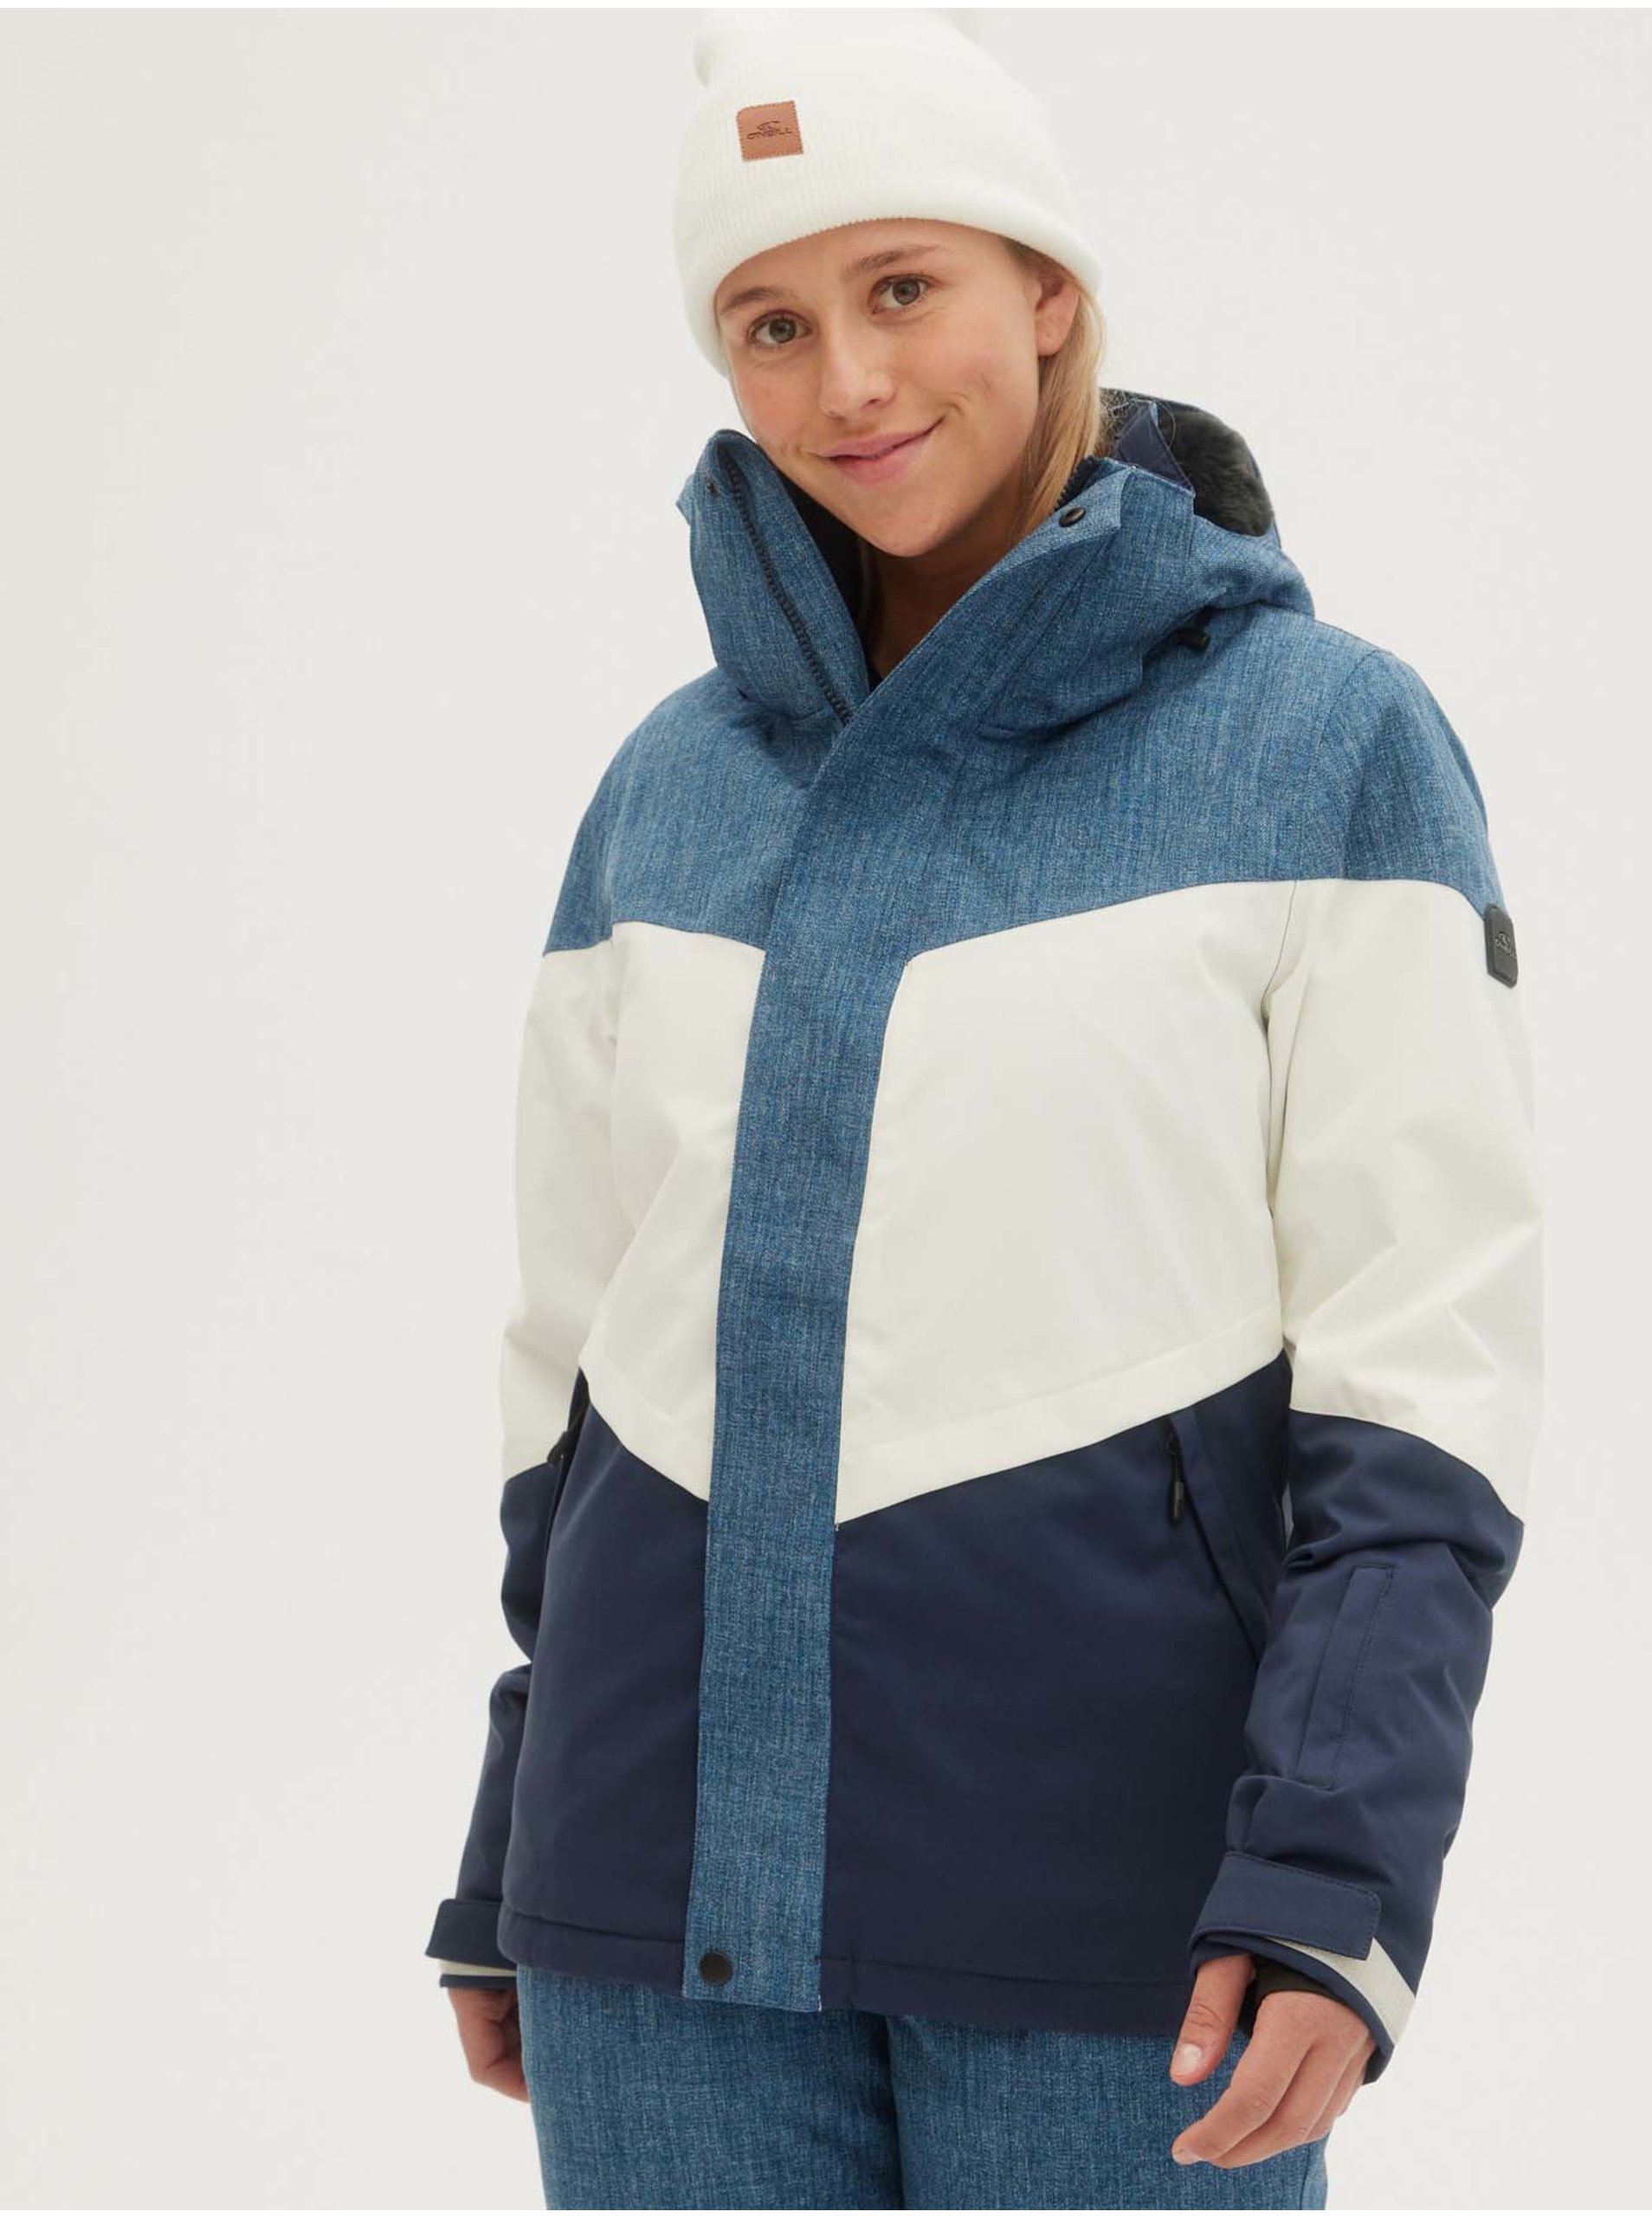 Lacno Bielo-modrá dámska zimná športová bunda s kapucou O'Neill Coral Jacket